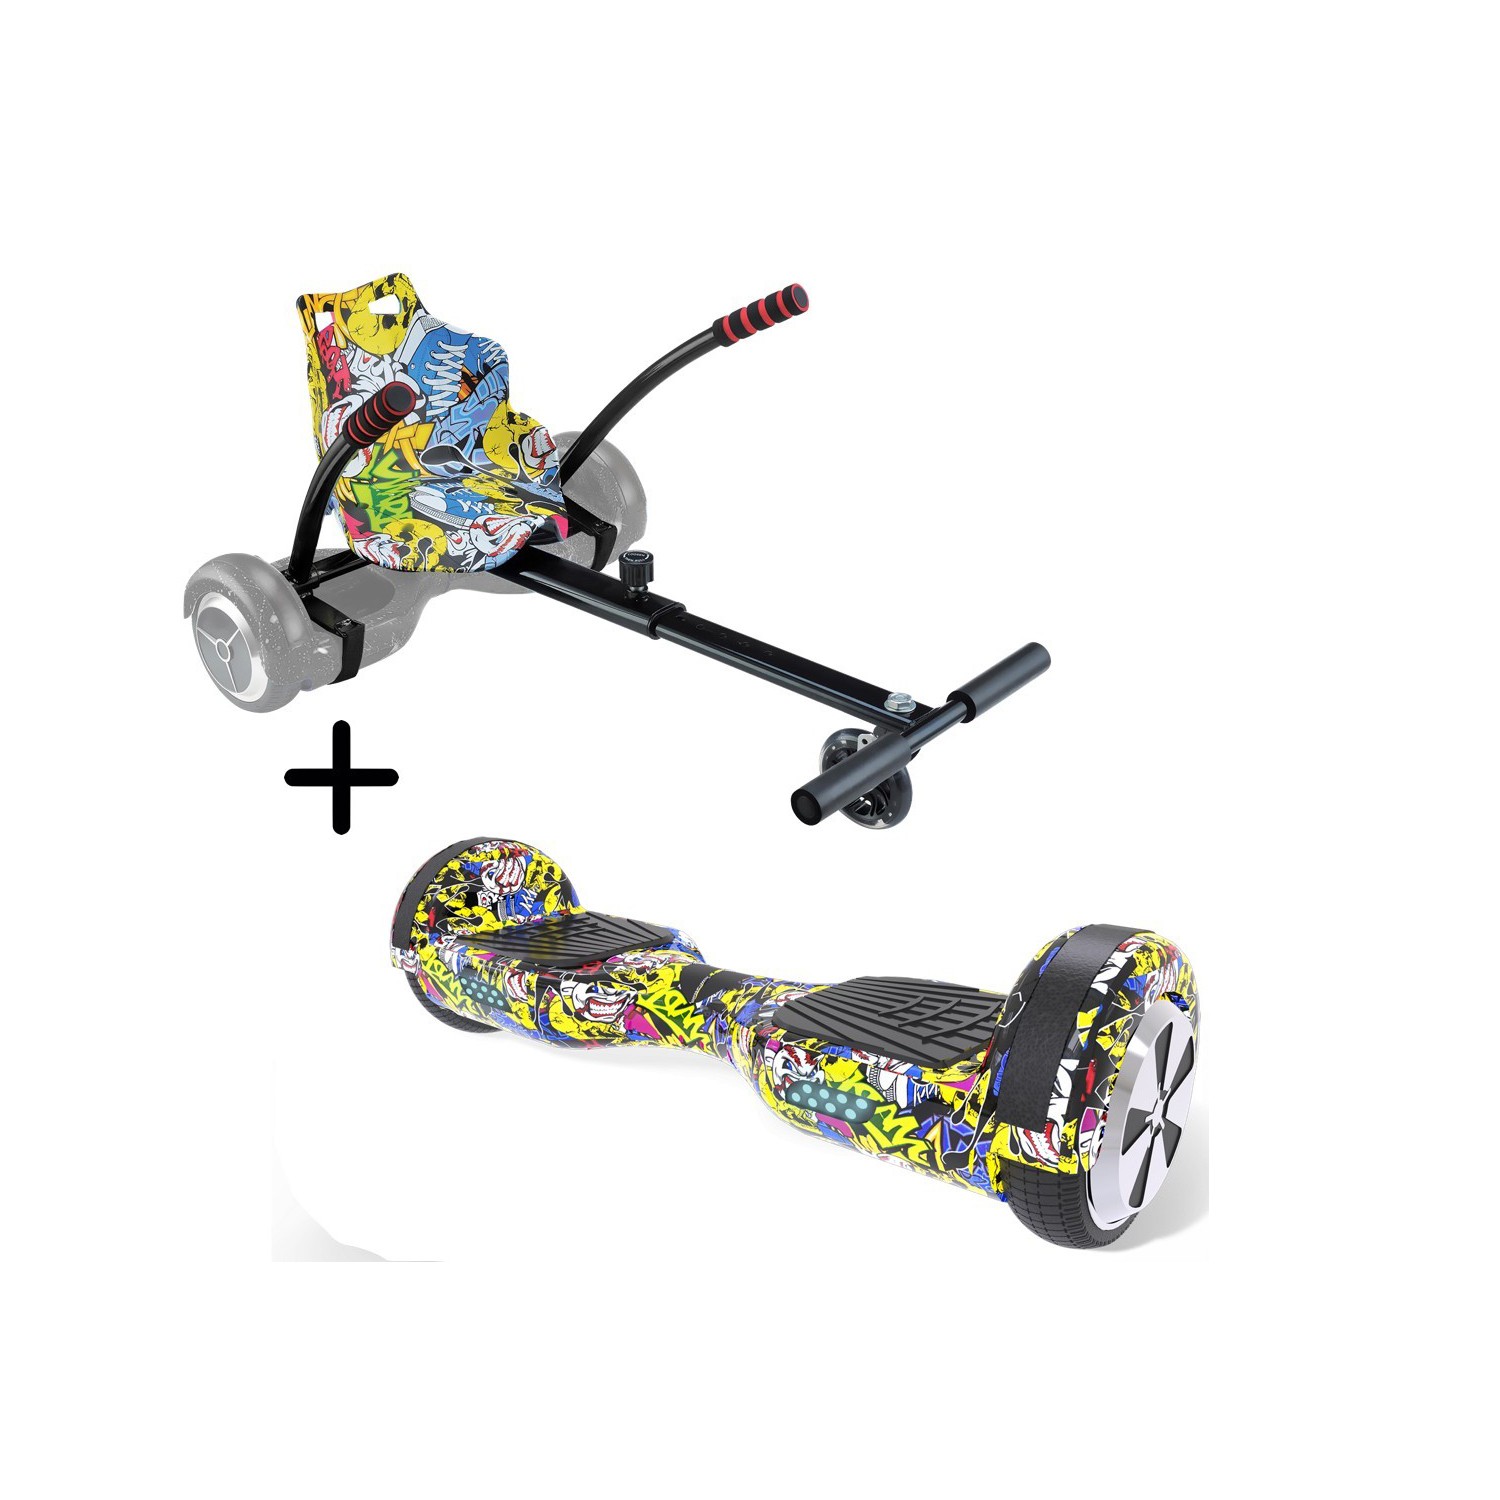 Hoverboard URBANGLIDE 65 Multicolor + Kart Pilot | eBay